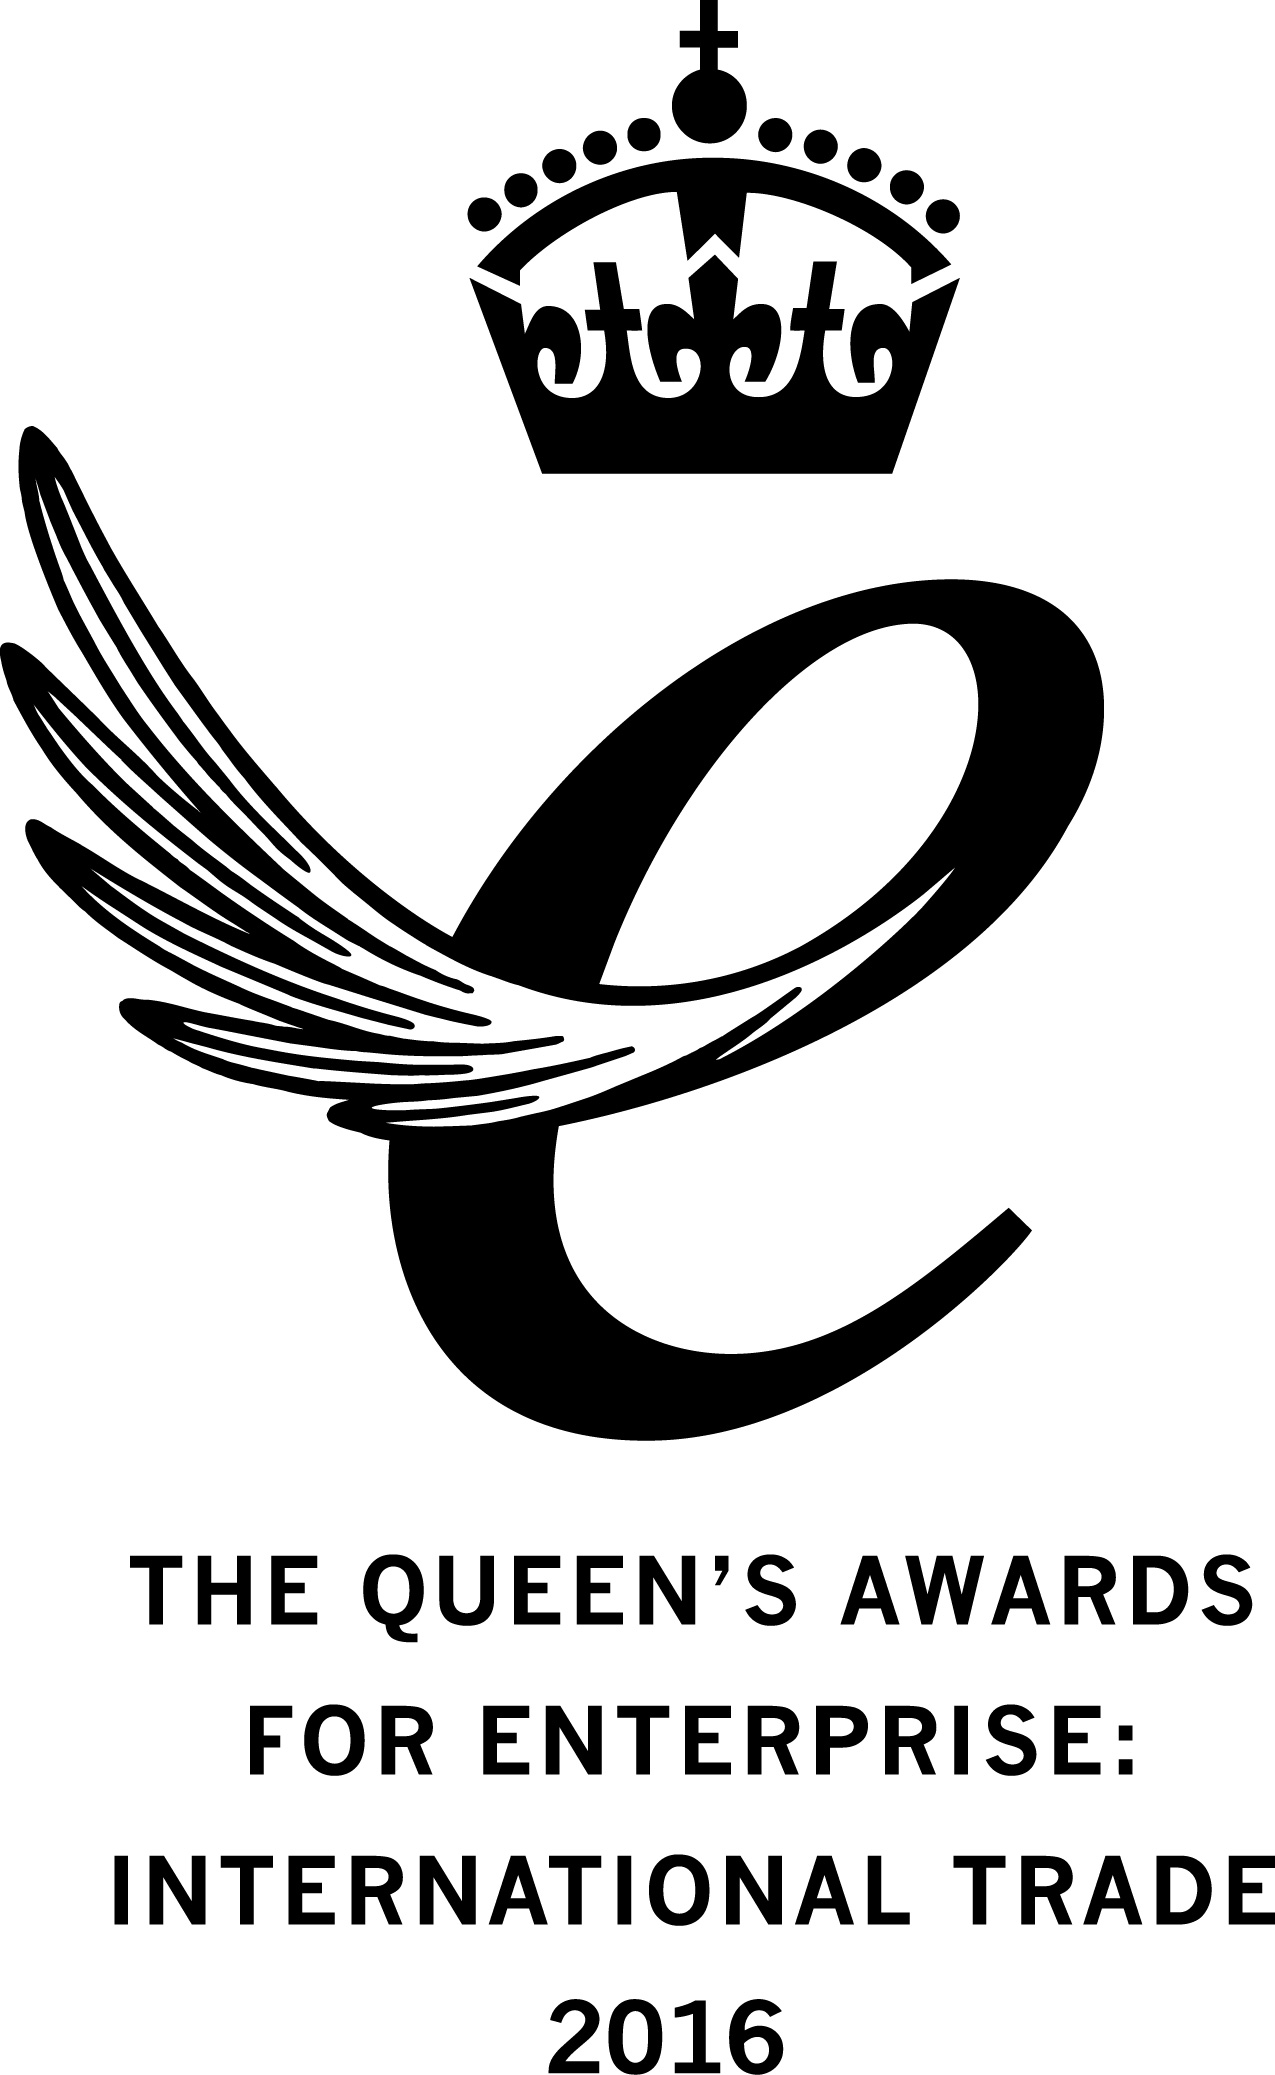 Queen's Award for Enterprise International Trade 2016 Emblem - black on white